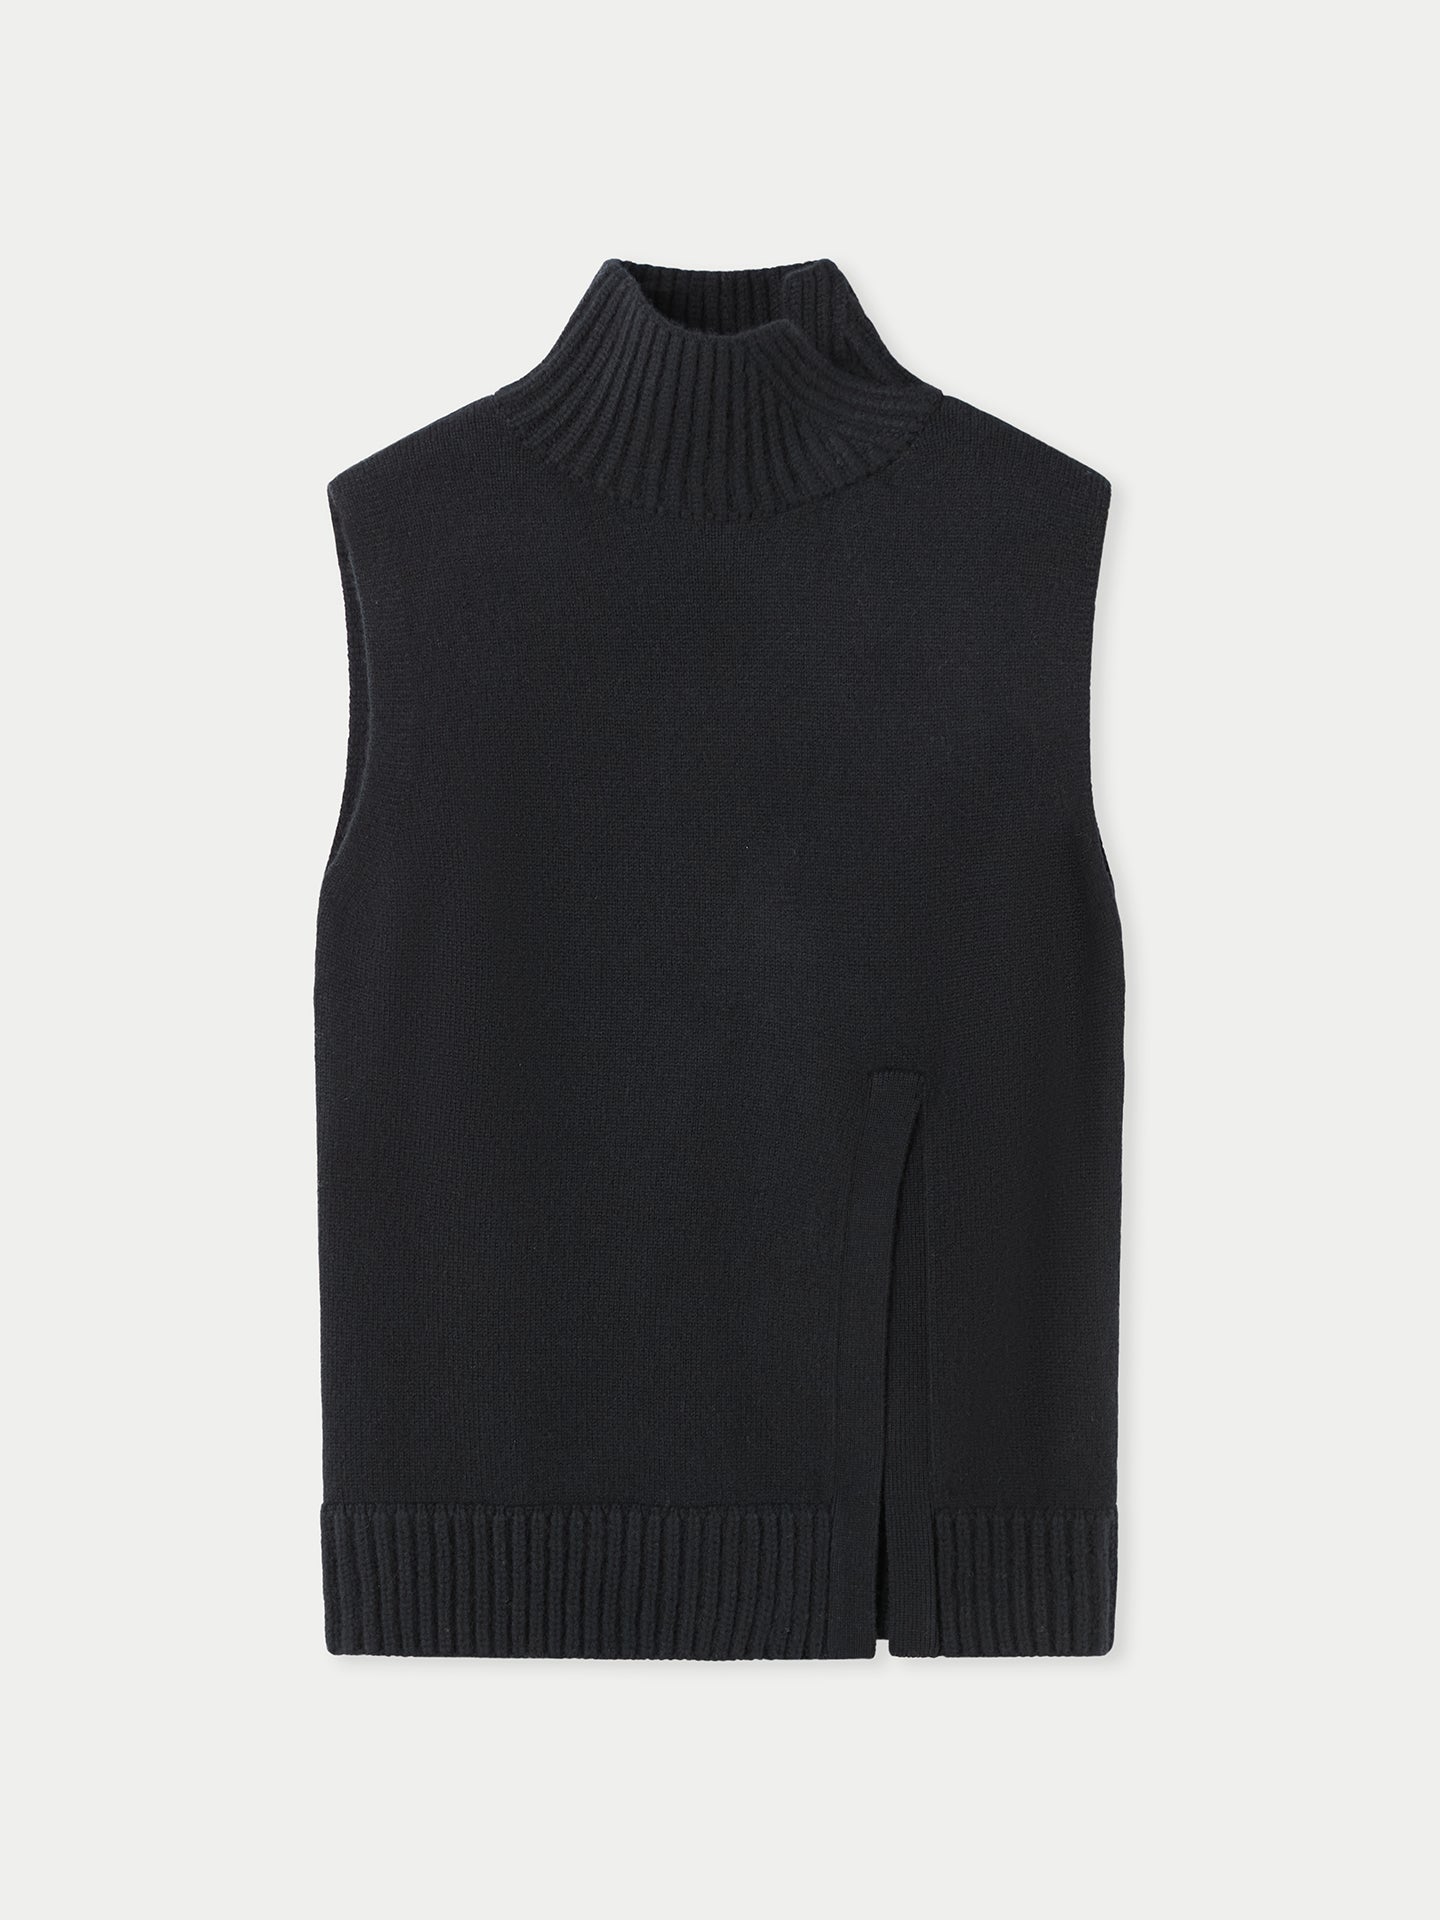 Women's Cut-Out Cashmere Vest Black - Gobi Cashmere 